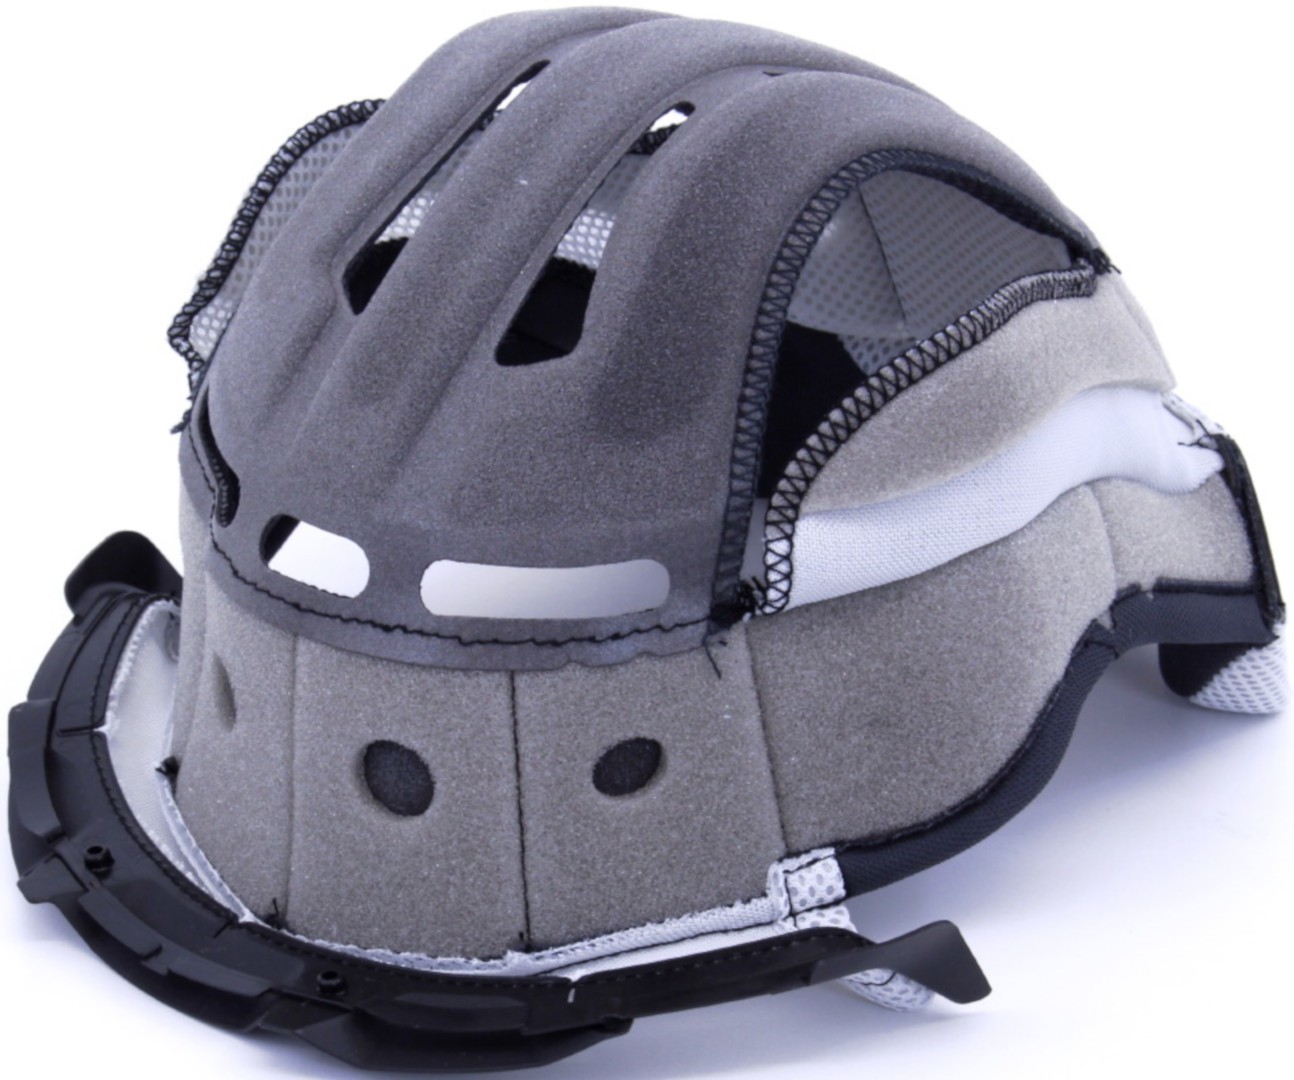 Центральная подушка для шлема Shoei VFX-WR Центр Pad, серый